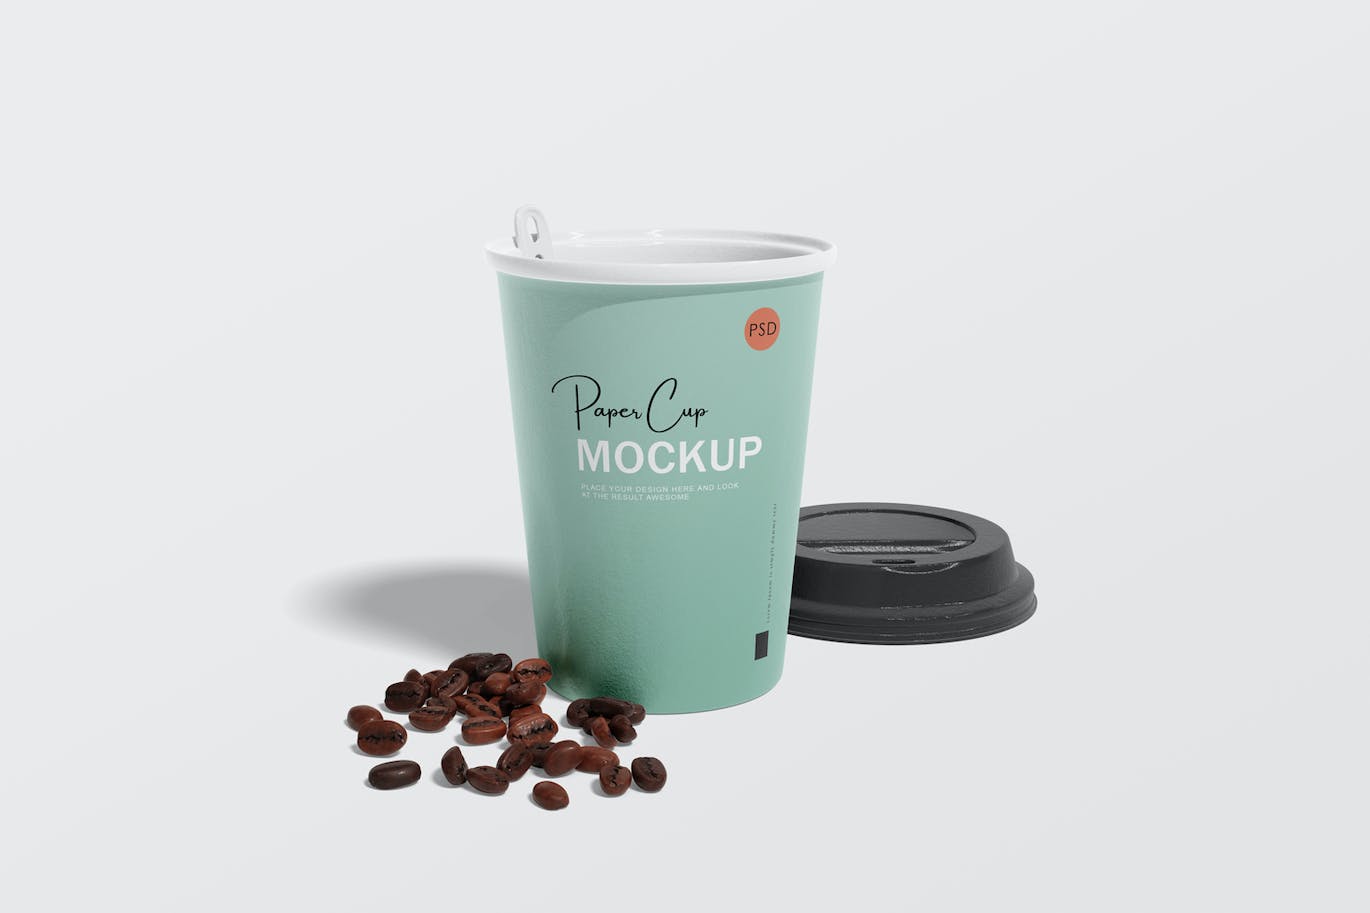 纸咖啡杯品牌设计样机 Paper coffee cup mockup 样机素材 第8张